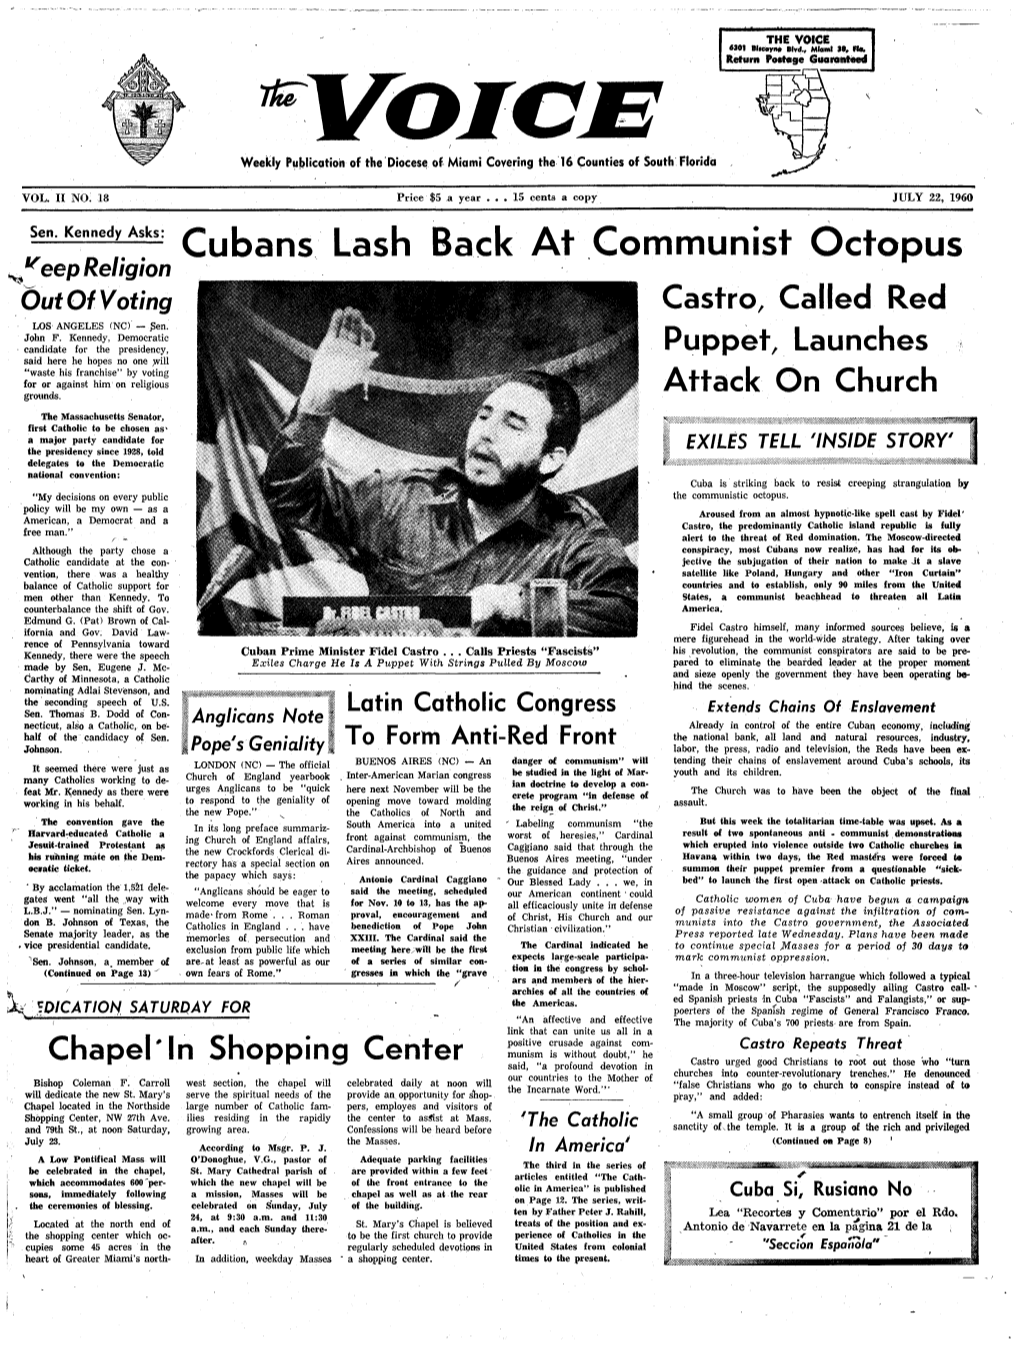 ——*— Cubans Lash Back at Communist Octopus